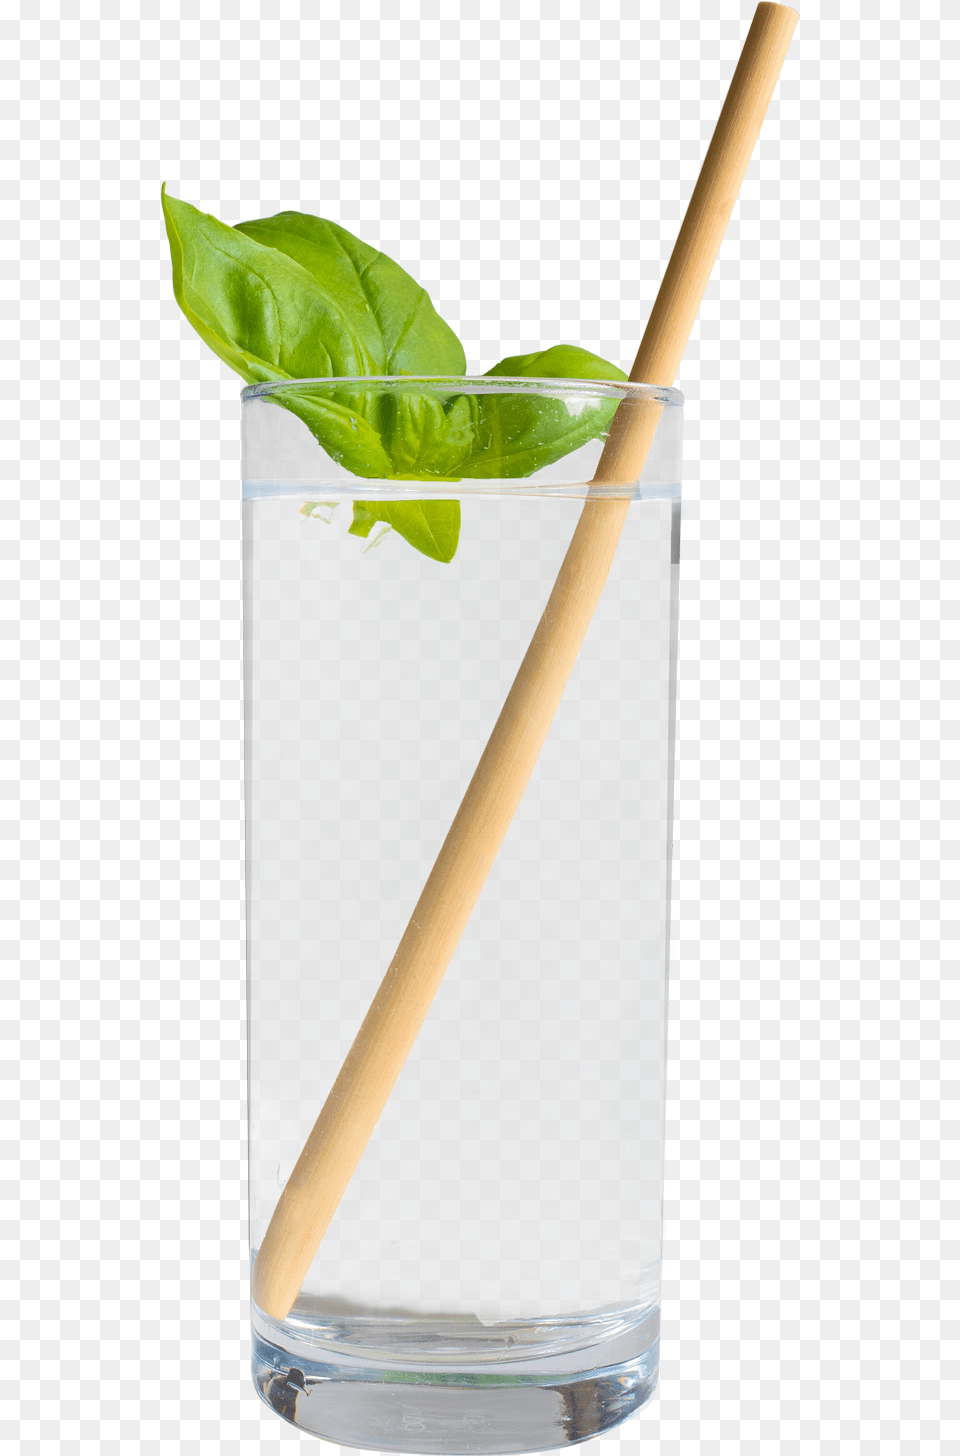 Vase, Leaf, Plant, Alcohol, Beverage Free Png Download